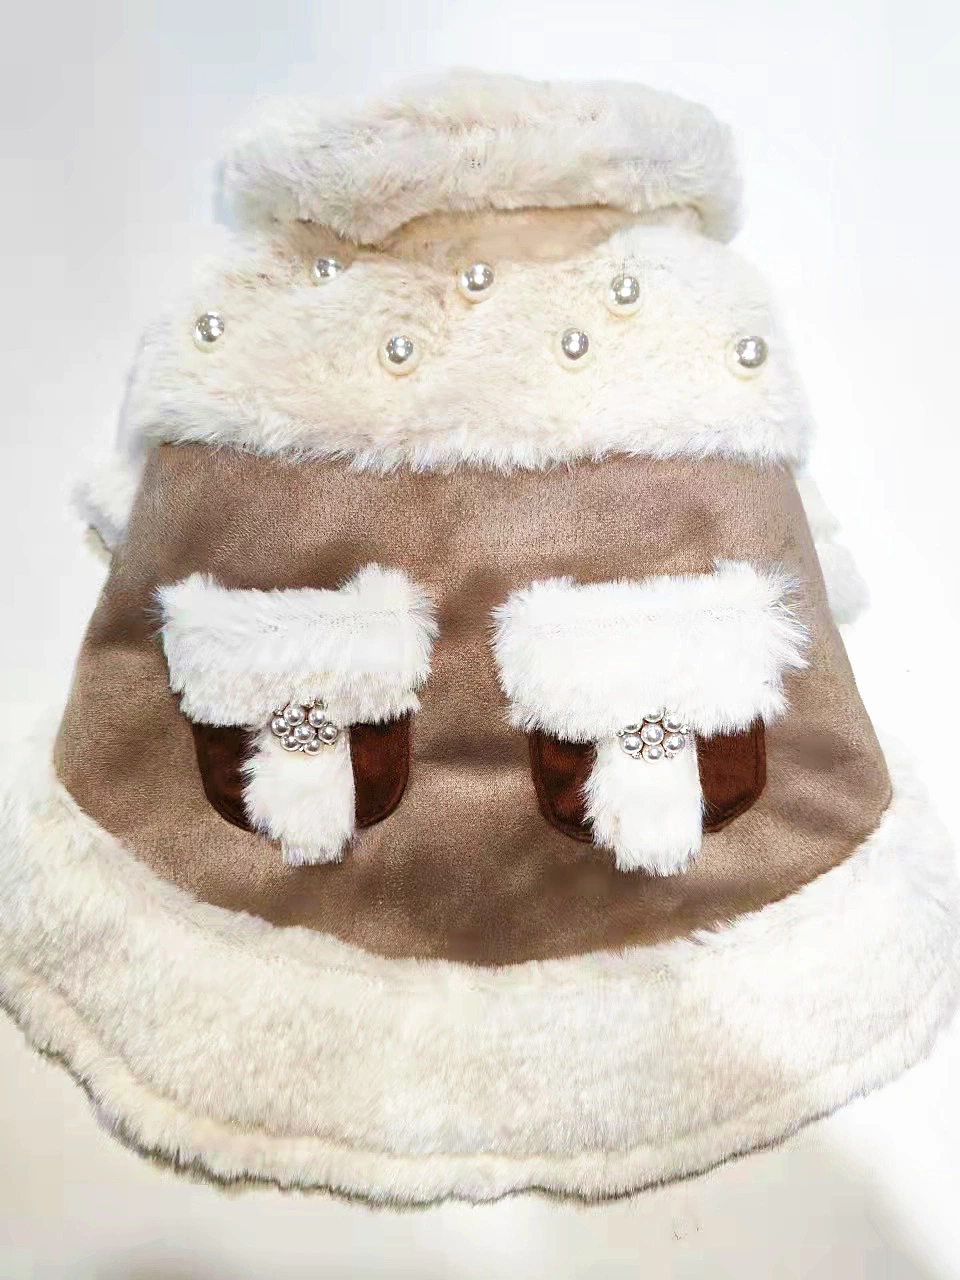 Lujo invierno Worm Pet Productos Moda Diseñador Invierno Worm Dog Ropa Accesorios para mascotas